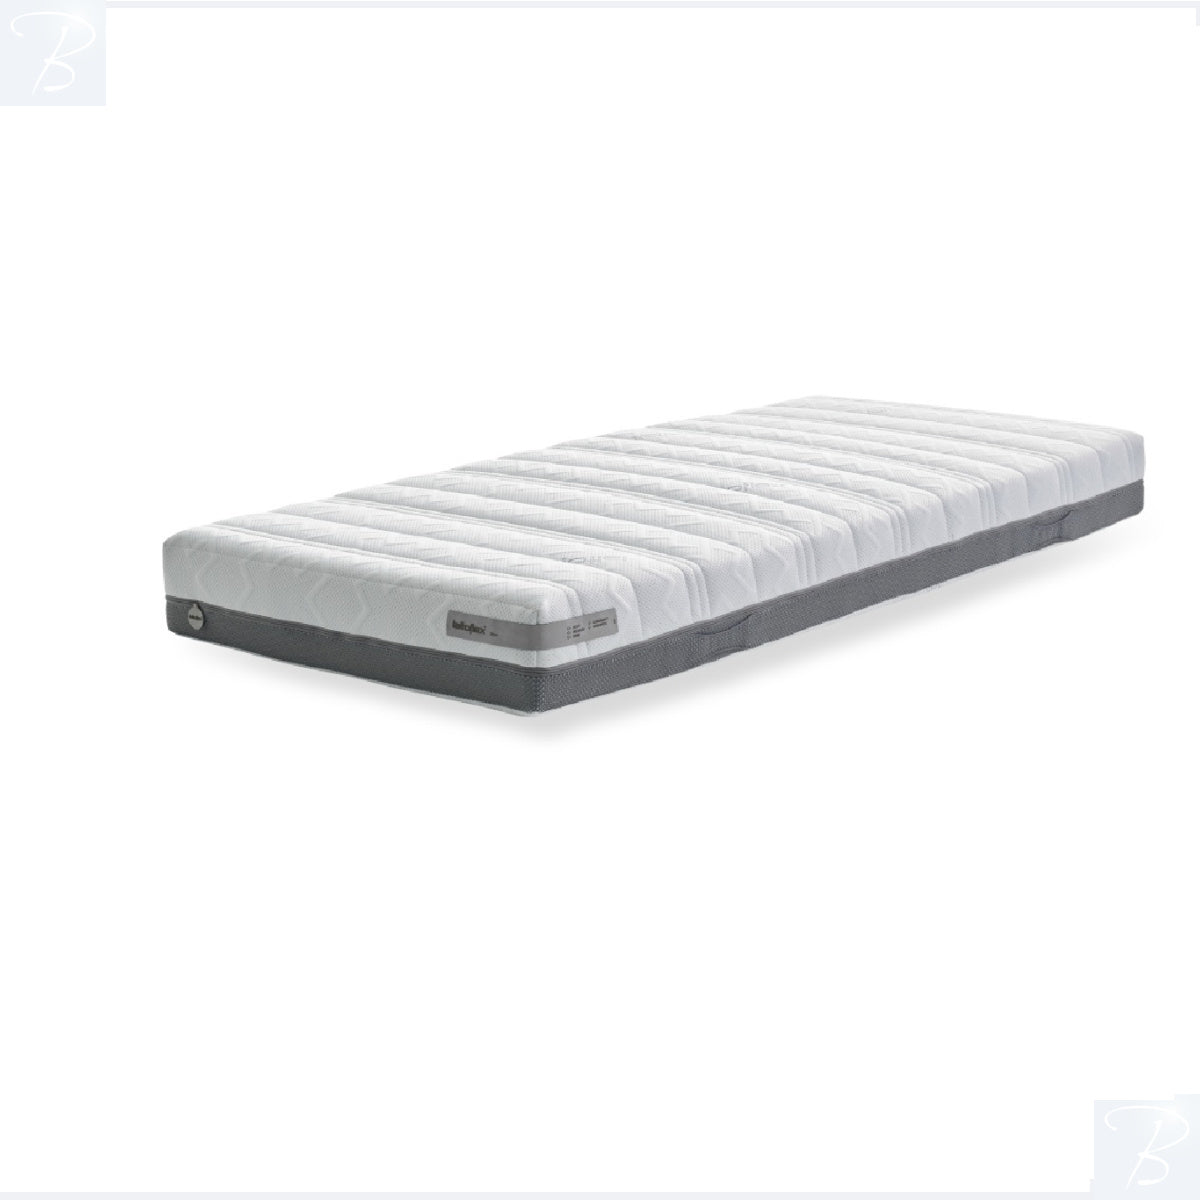 latexmatras Zen Plus-matelas en latex Zen Plus-latex mattress Zen Plus